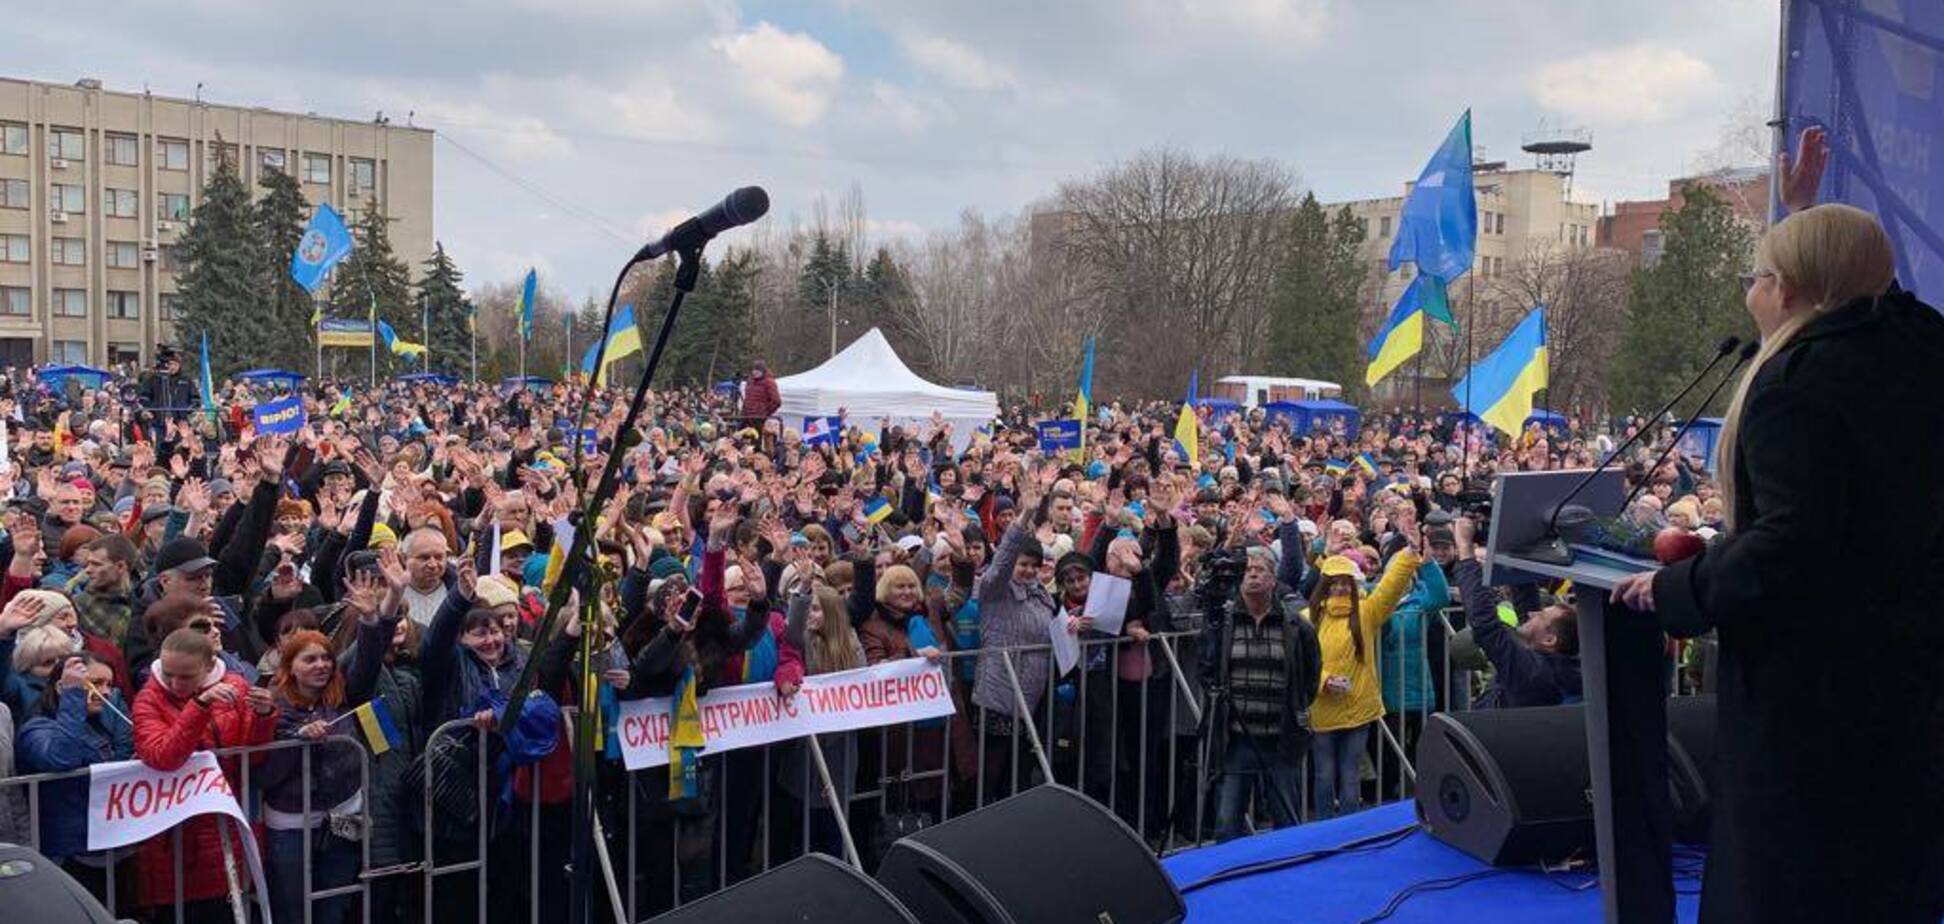 Тимошенко у Слов’янську: щоб досягти миру, ми маємо об’єднатися та діяти